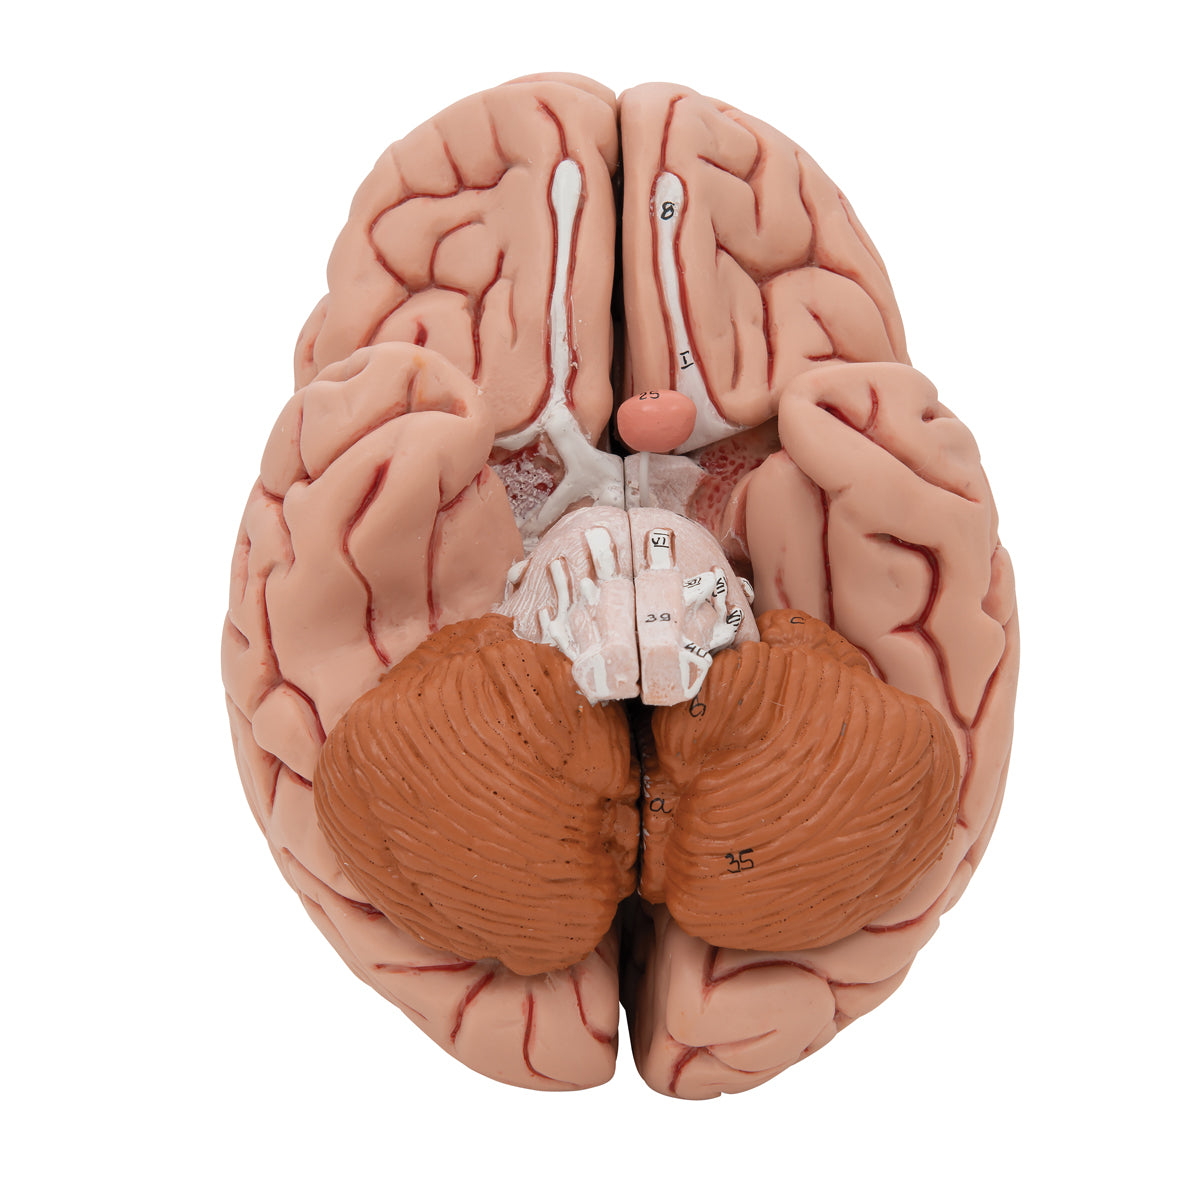 Hjärnmodell med ett mer naturtroget utseende. Kan delas upp i 5 delar